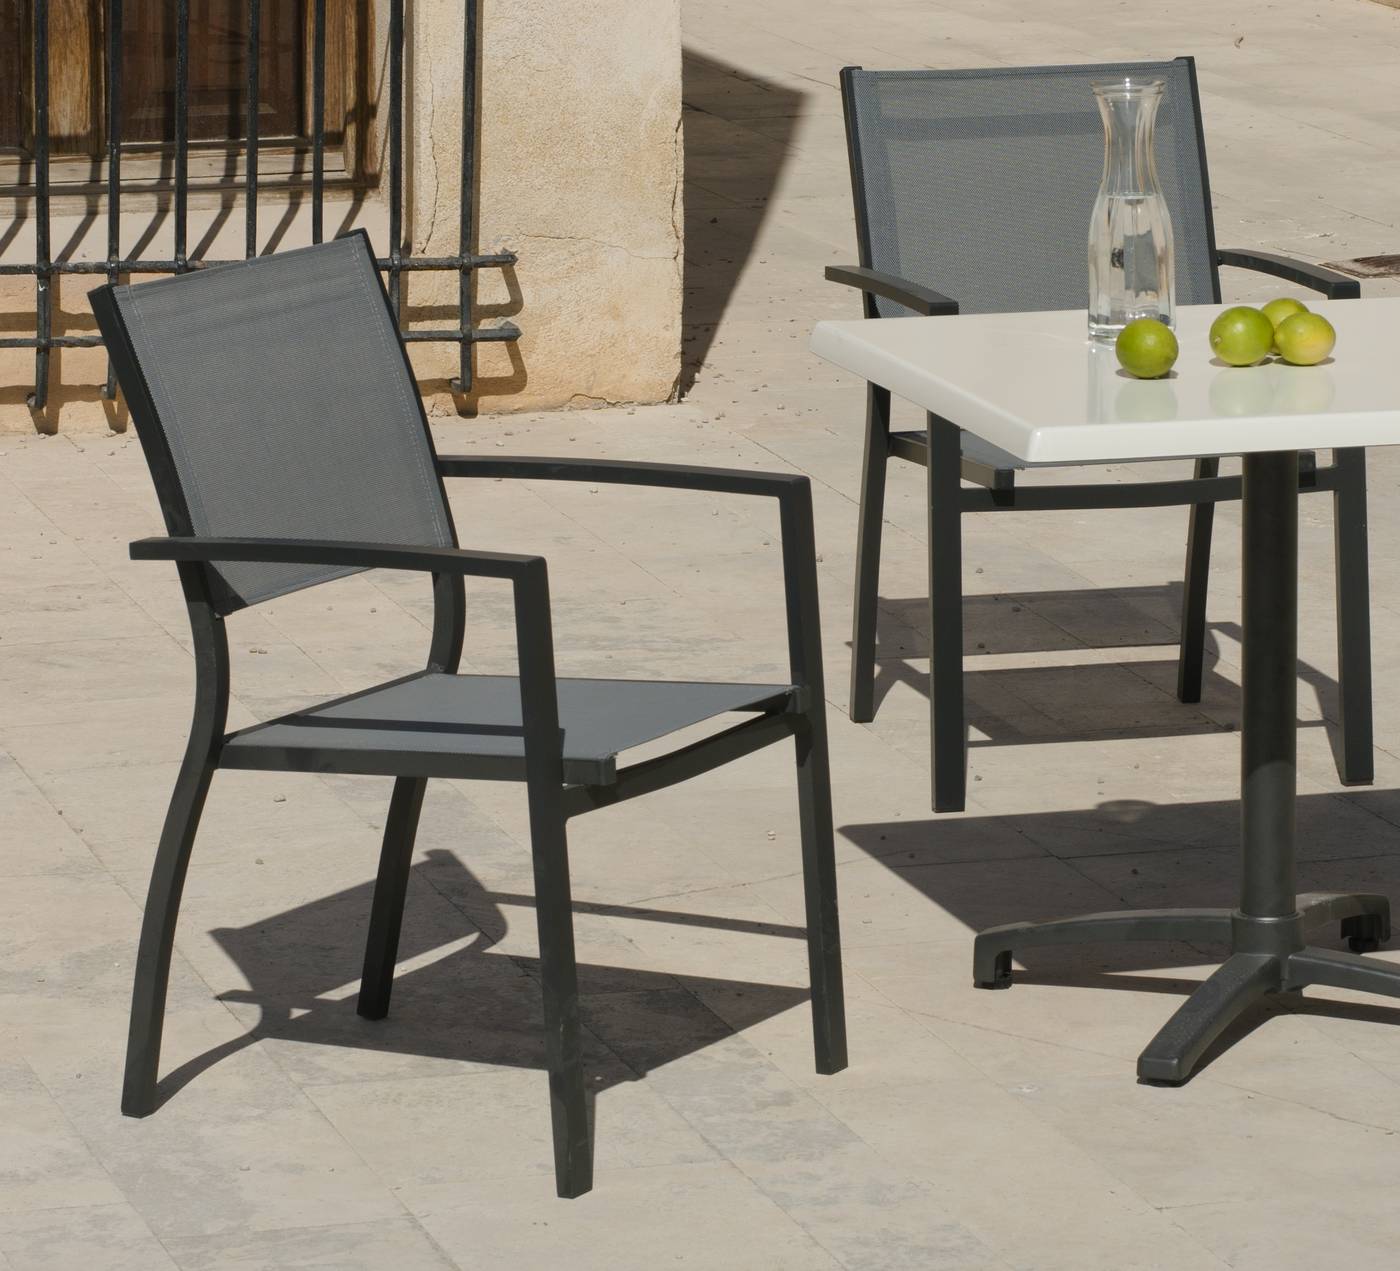 Conjunto Aluminio Firenze 80 - Conjunto aluminio: mesa cuadrada plegable con tablero de hevegalite de 80 cm. y 4 sillones